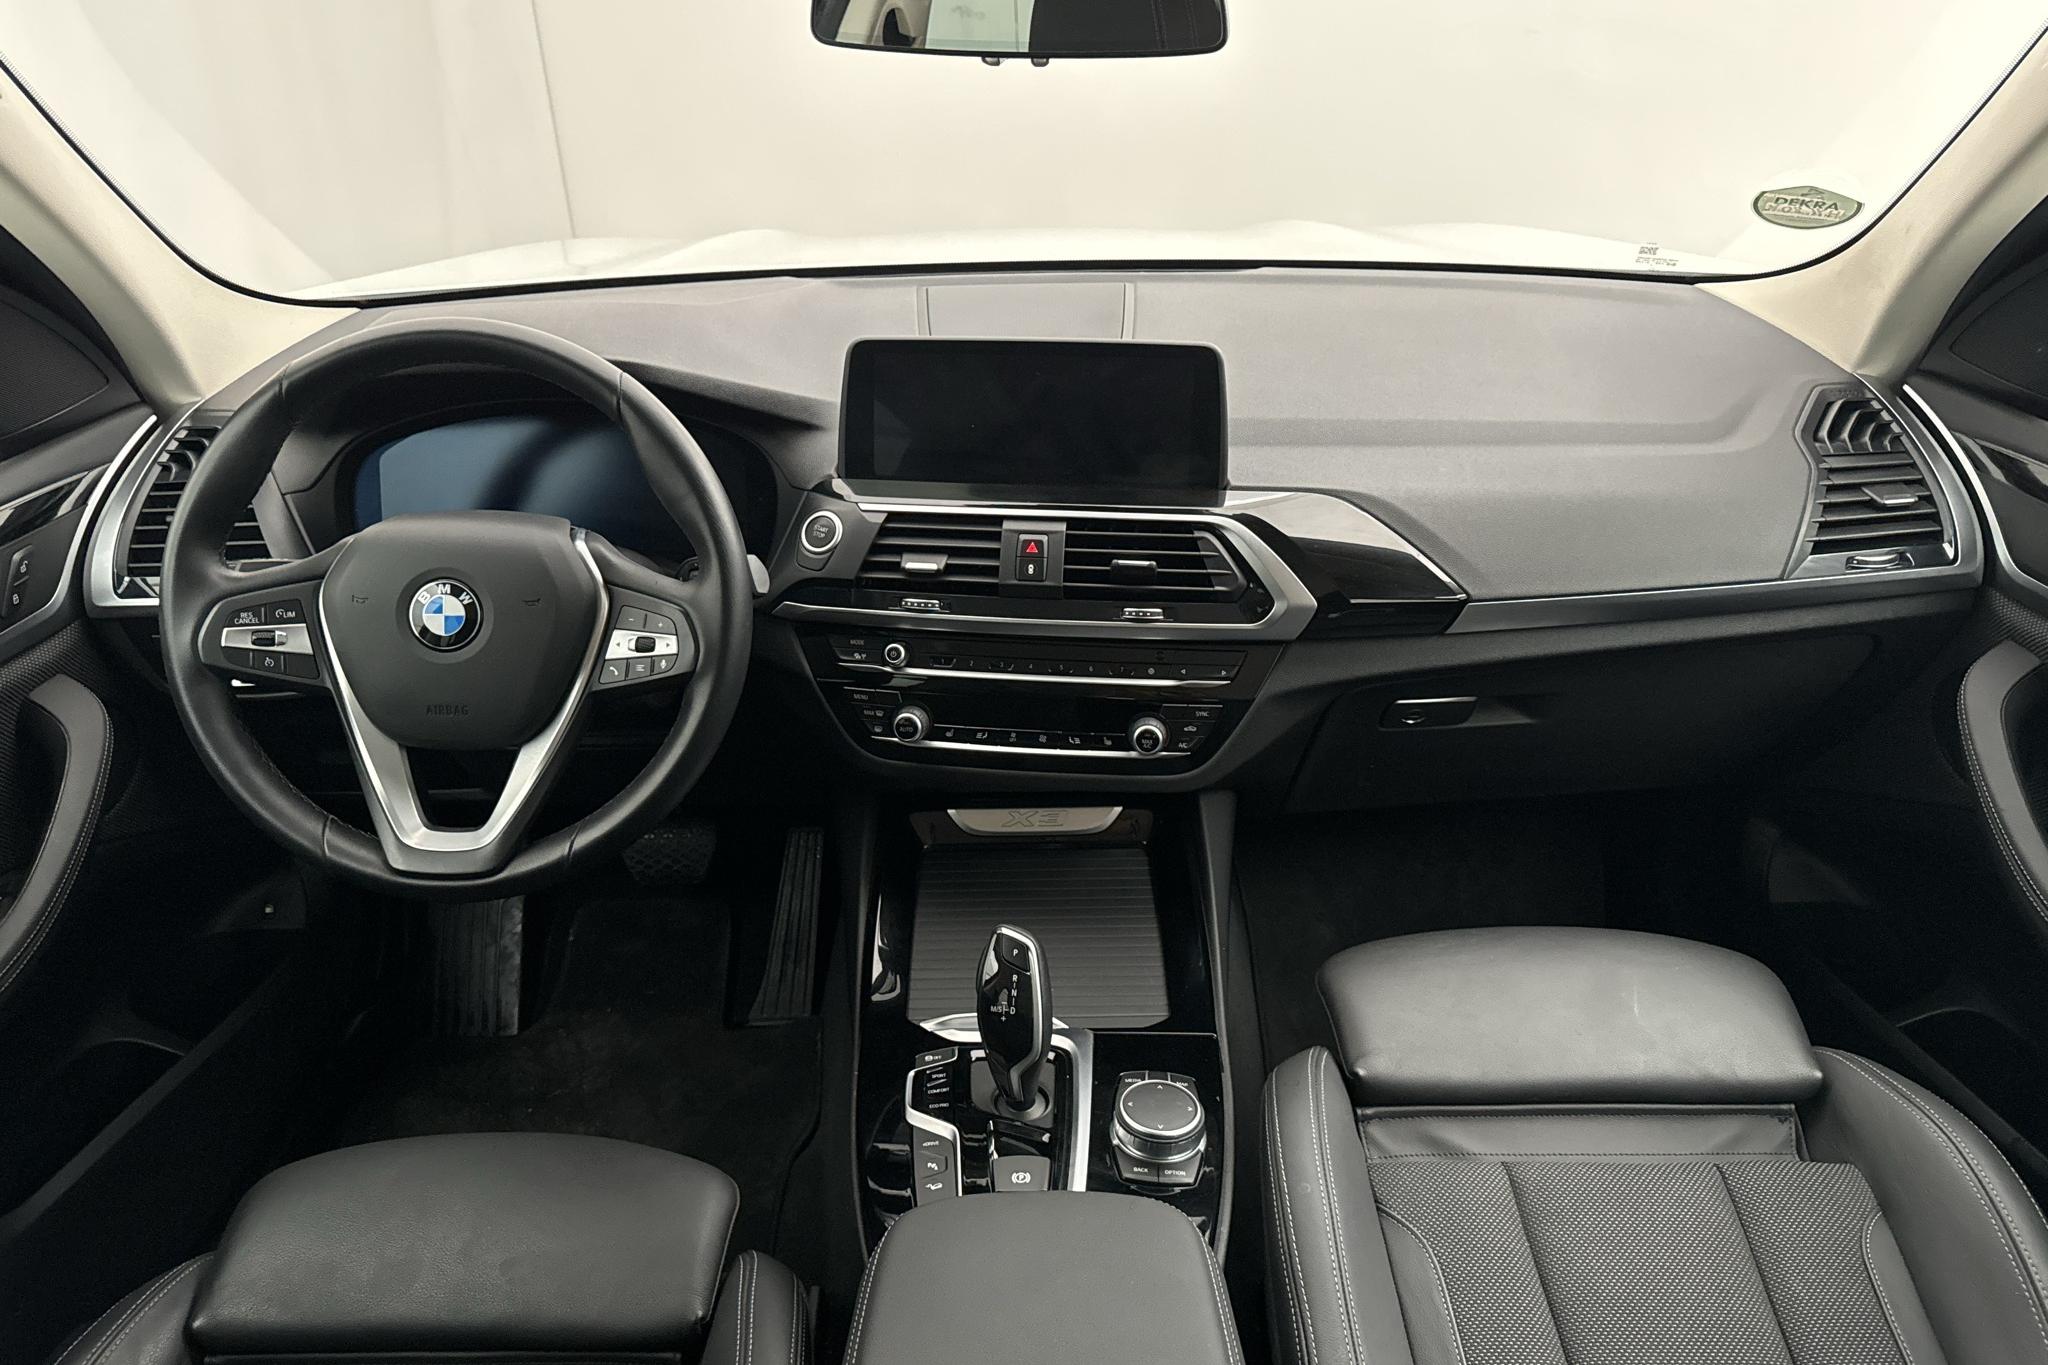 BMW X3 xDrive30e, G01 (292hk) - 51 450 km - Automaattinen - valkoinen - 2021